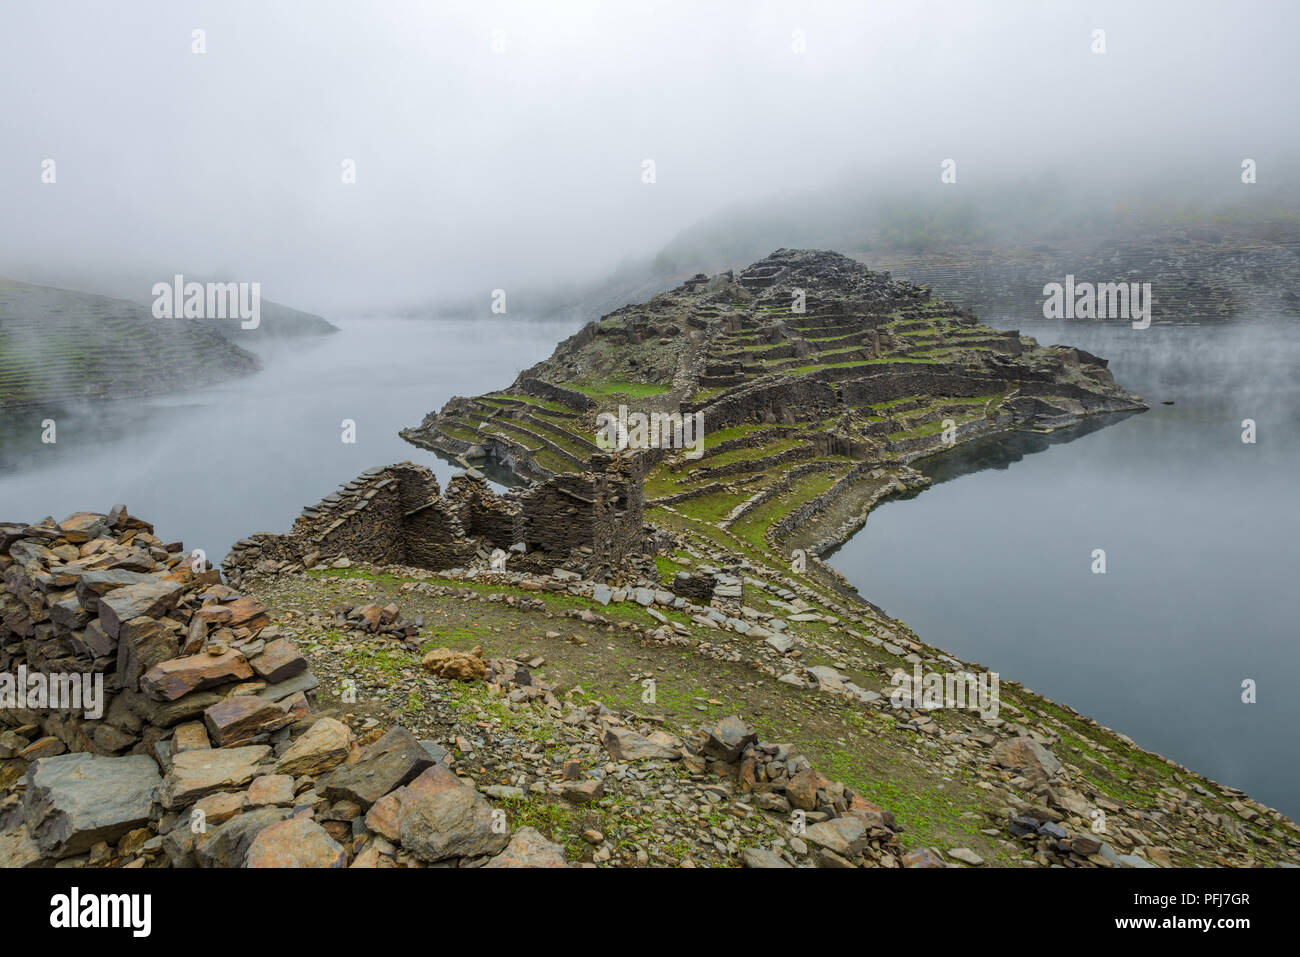 La península de Castro Candaz, restos de un poblado celta y luego medieval, entre la niebla en la Ribeira Sacra, Chantada Stock Photo